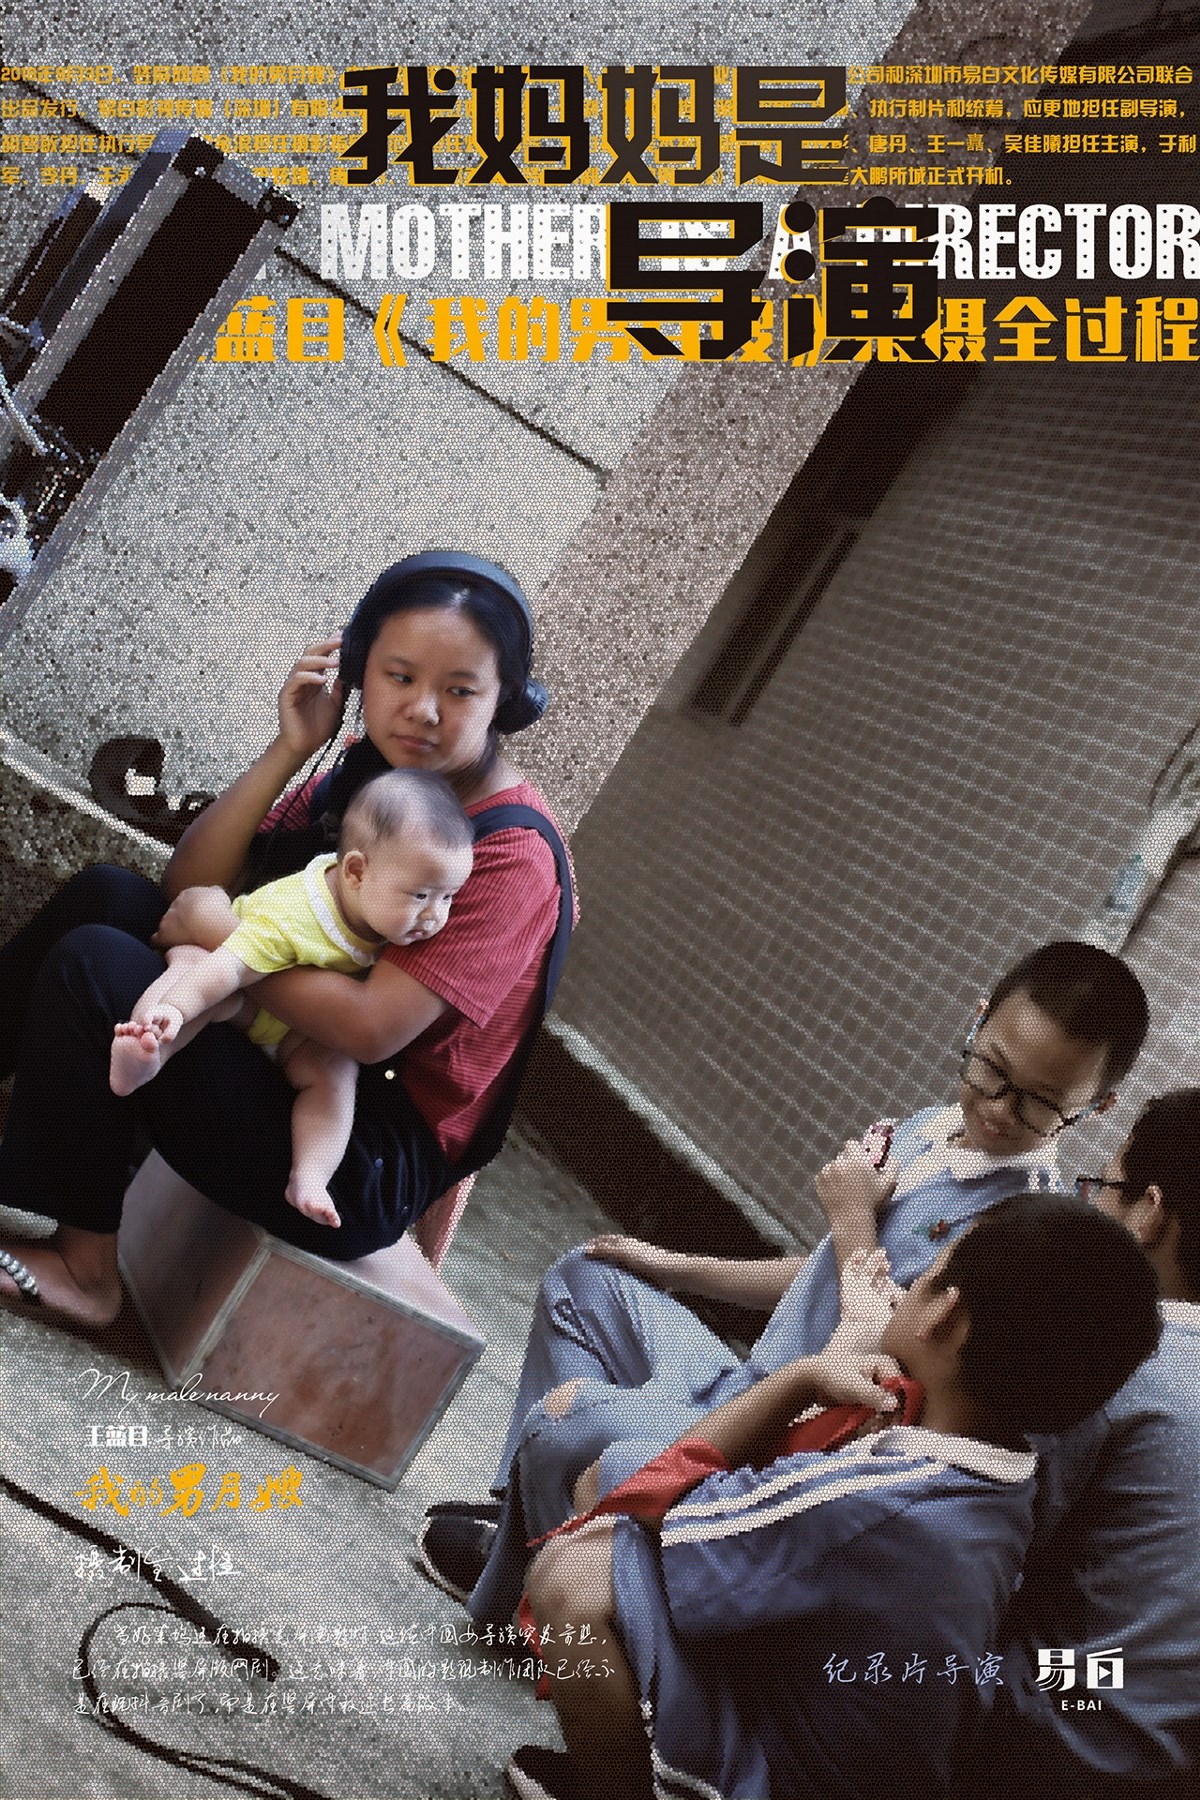 易白文化：纪录片《我妈妈是导演》海报设计